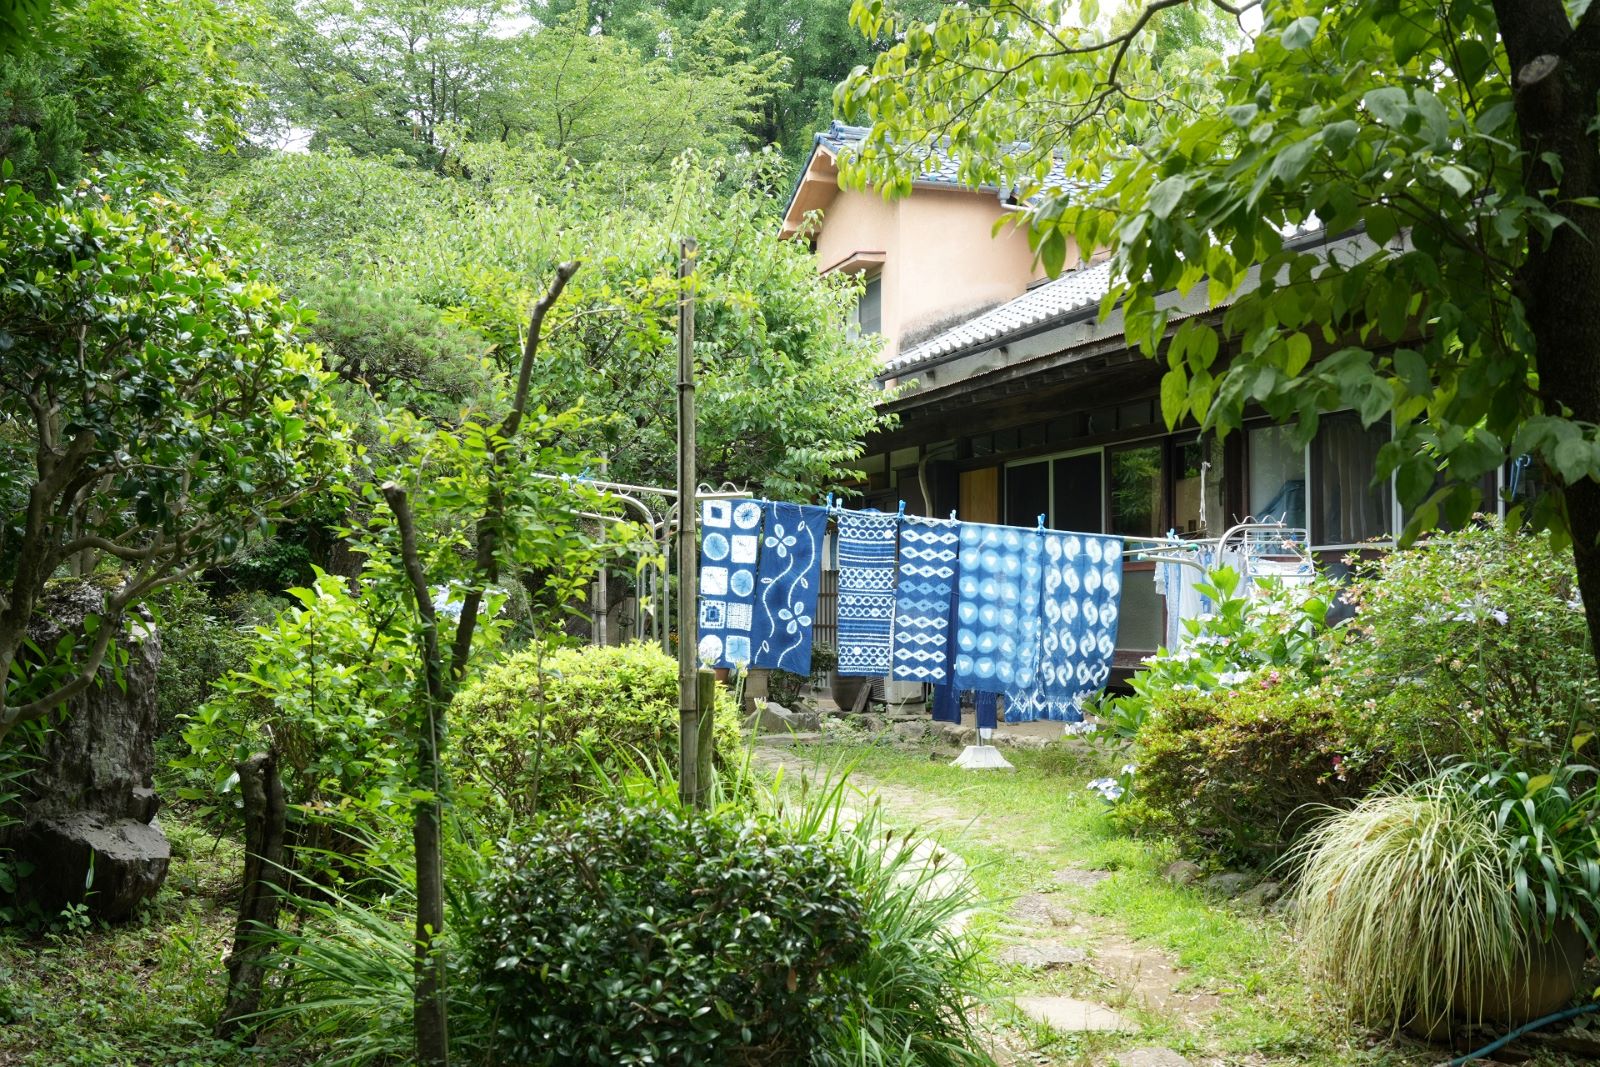 【写真】緑豊かな庭に藍色に染められた布が、干されている風景